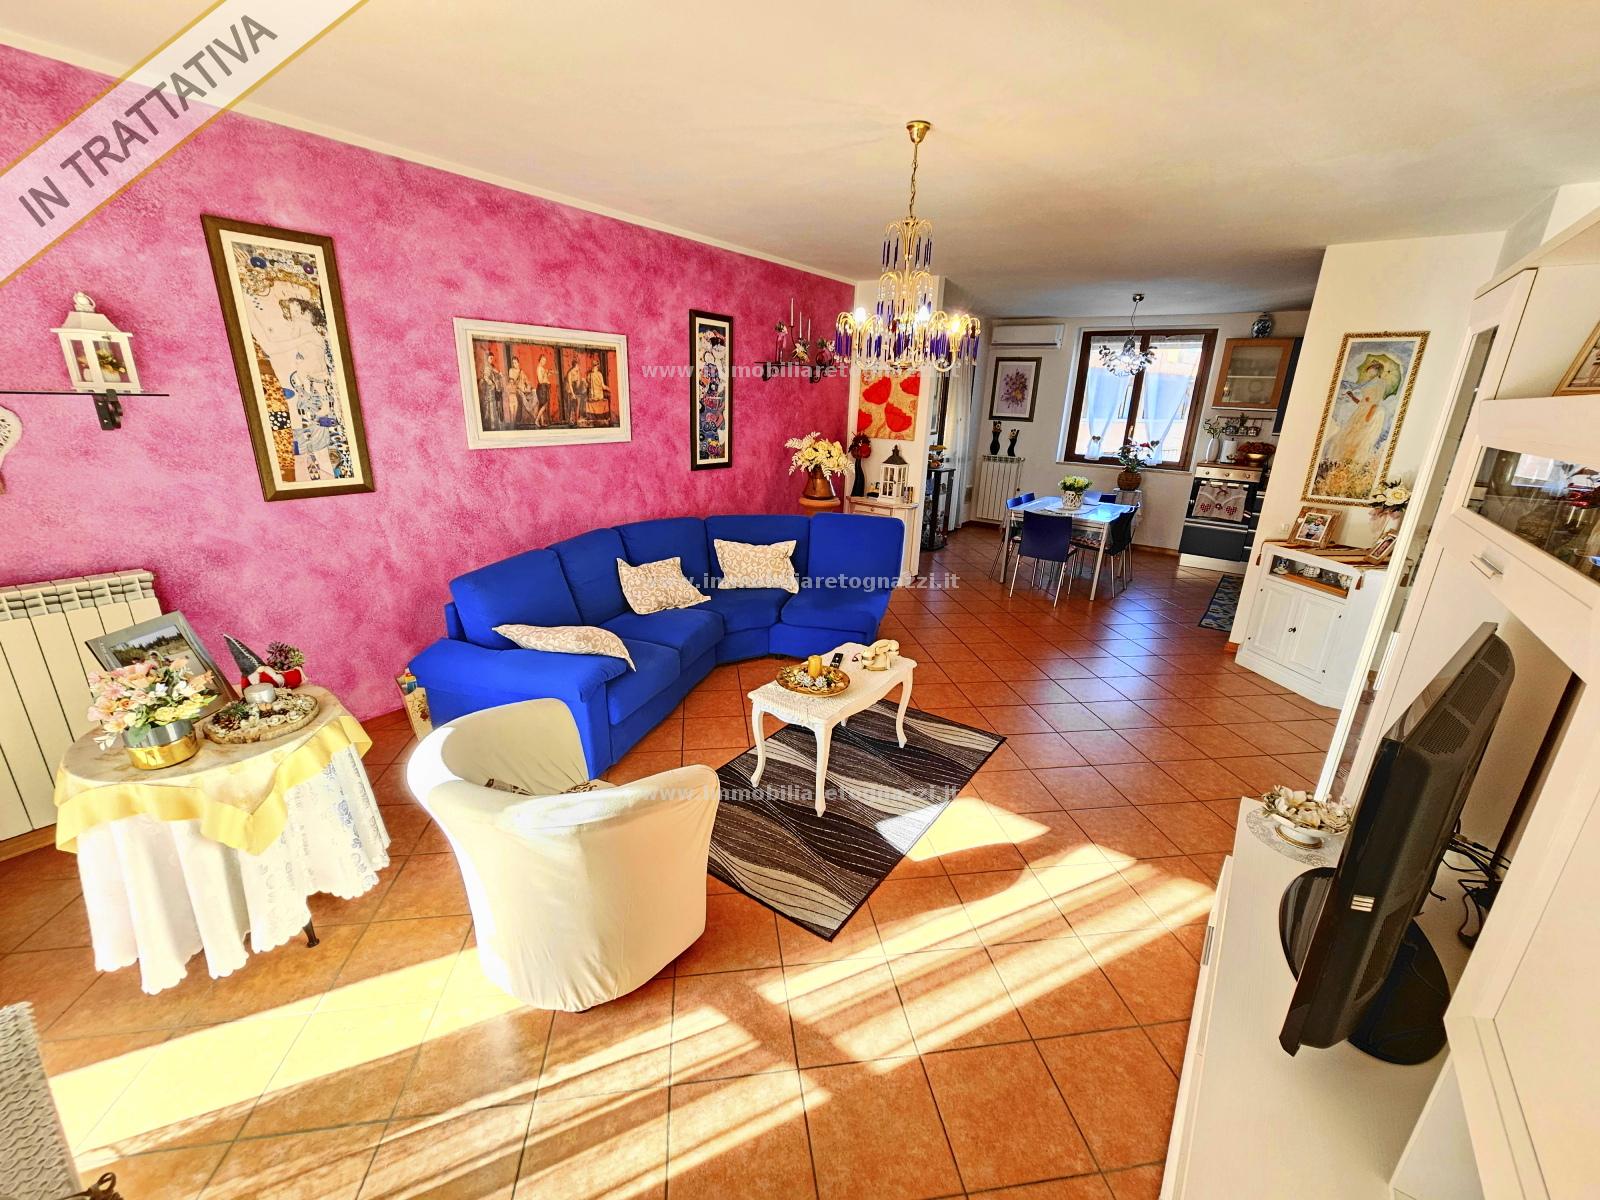 Appartamento in vendita a Certaldo, 5 locali, prezzo € 260.000 | PortaleAgenzieImmobiliari.it